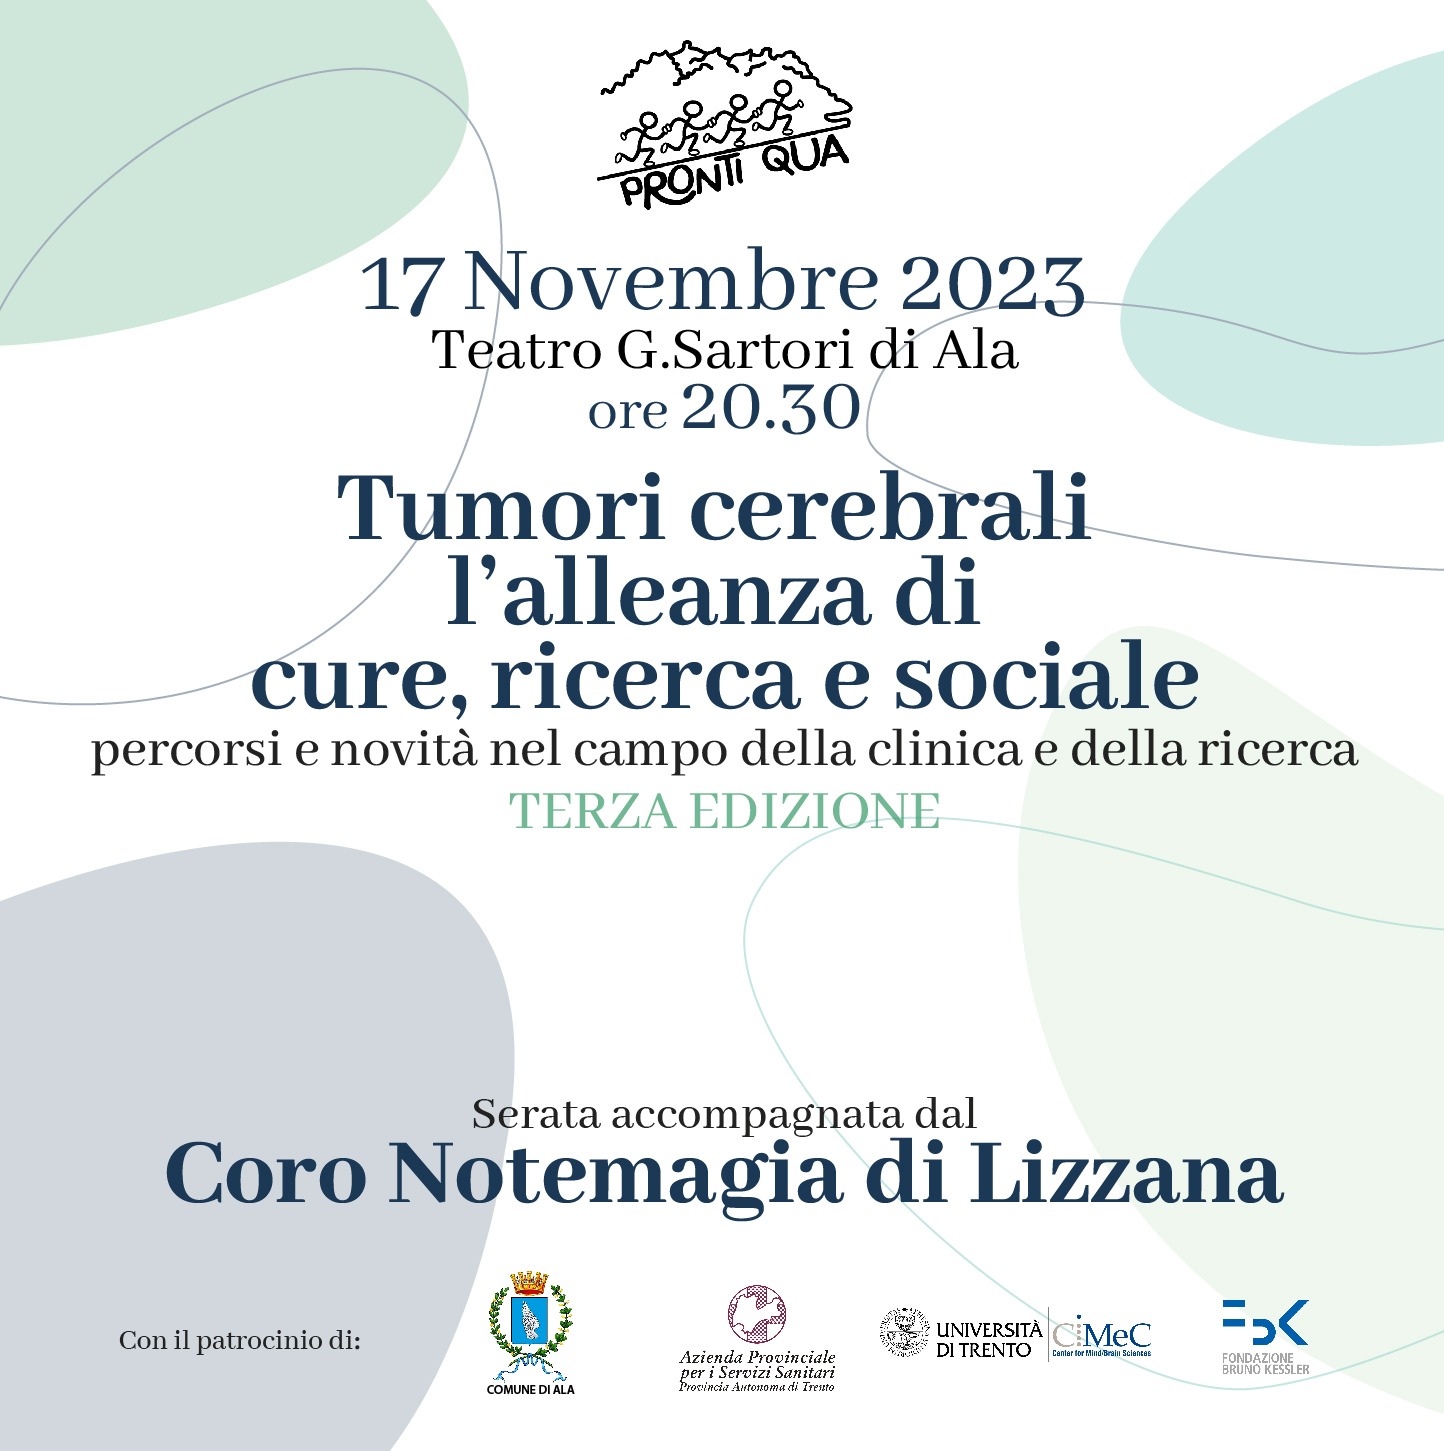 Tumori cerebrali: l’alleanza di cure, ricerca e sociale 2023